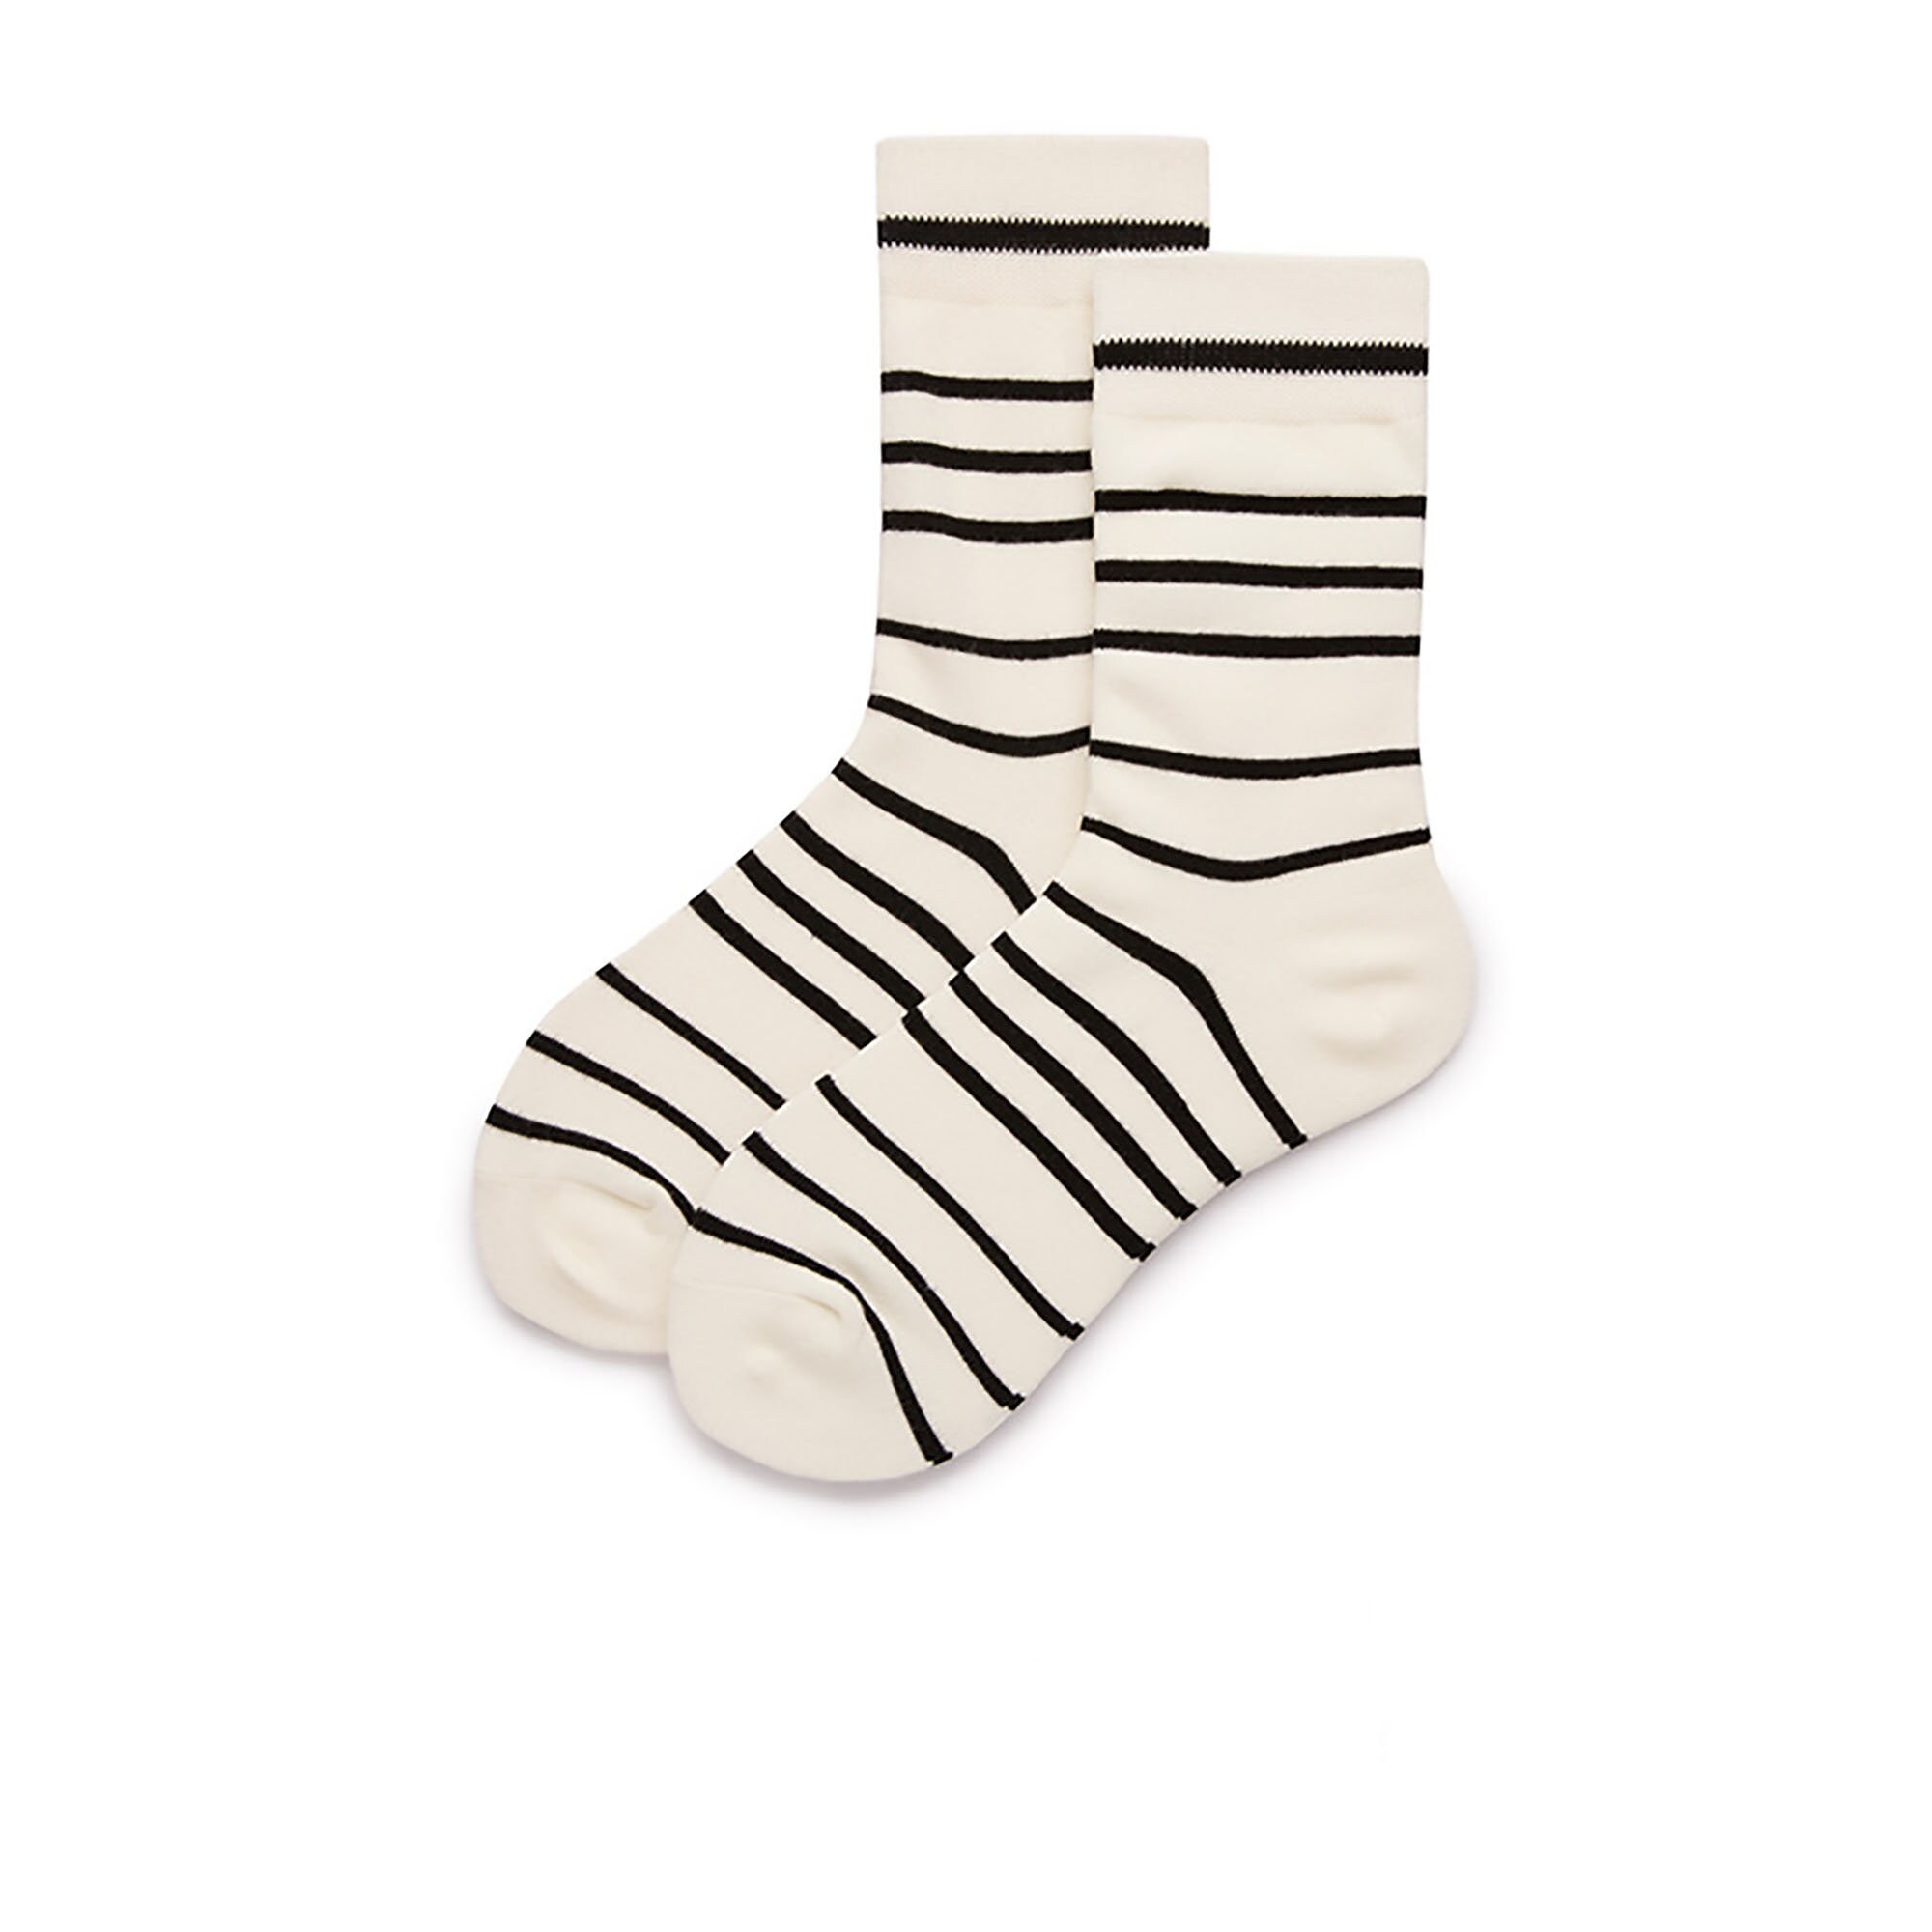 Black White Stripes Socks for Women's and Men'sCasual | Etsy